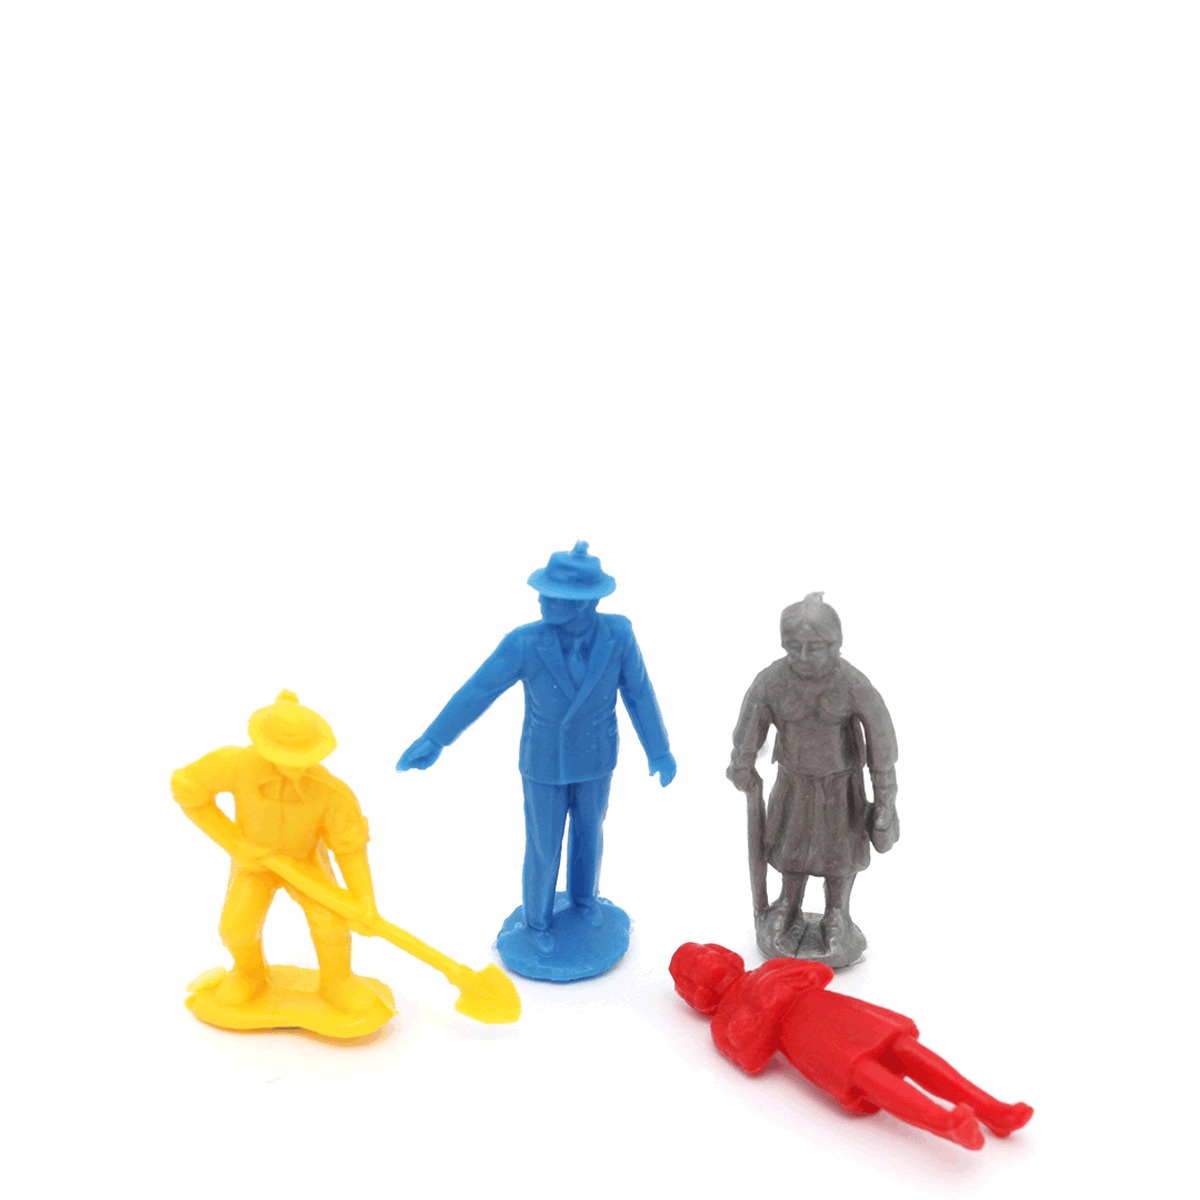 Juguete - Toy : 9 SOLDADOS plástico duro